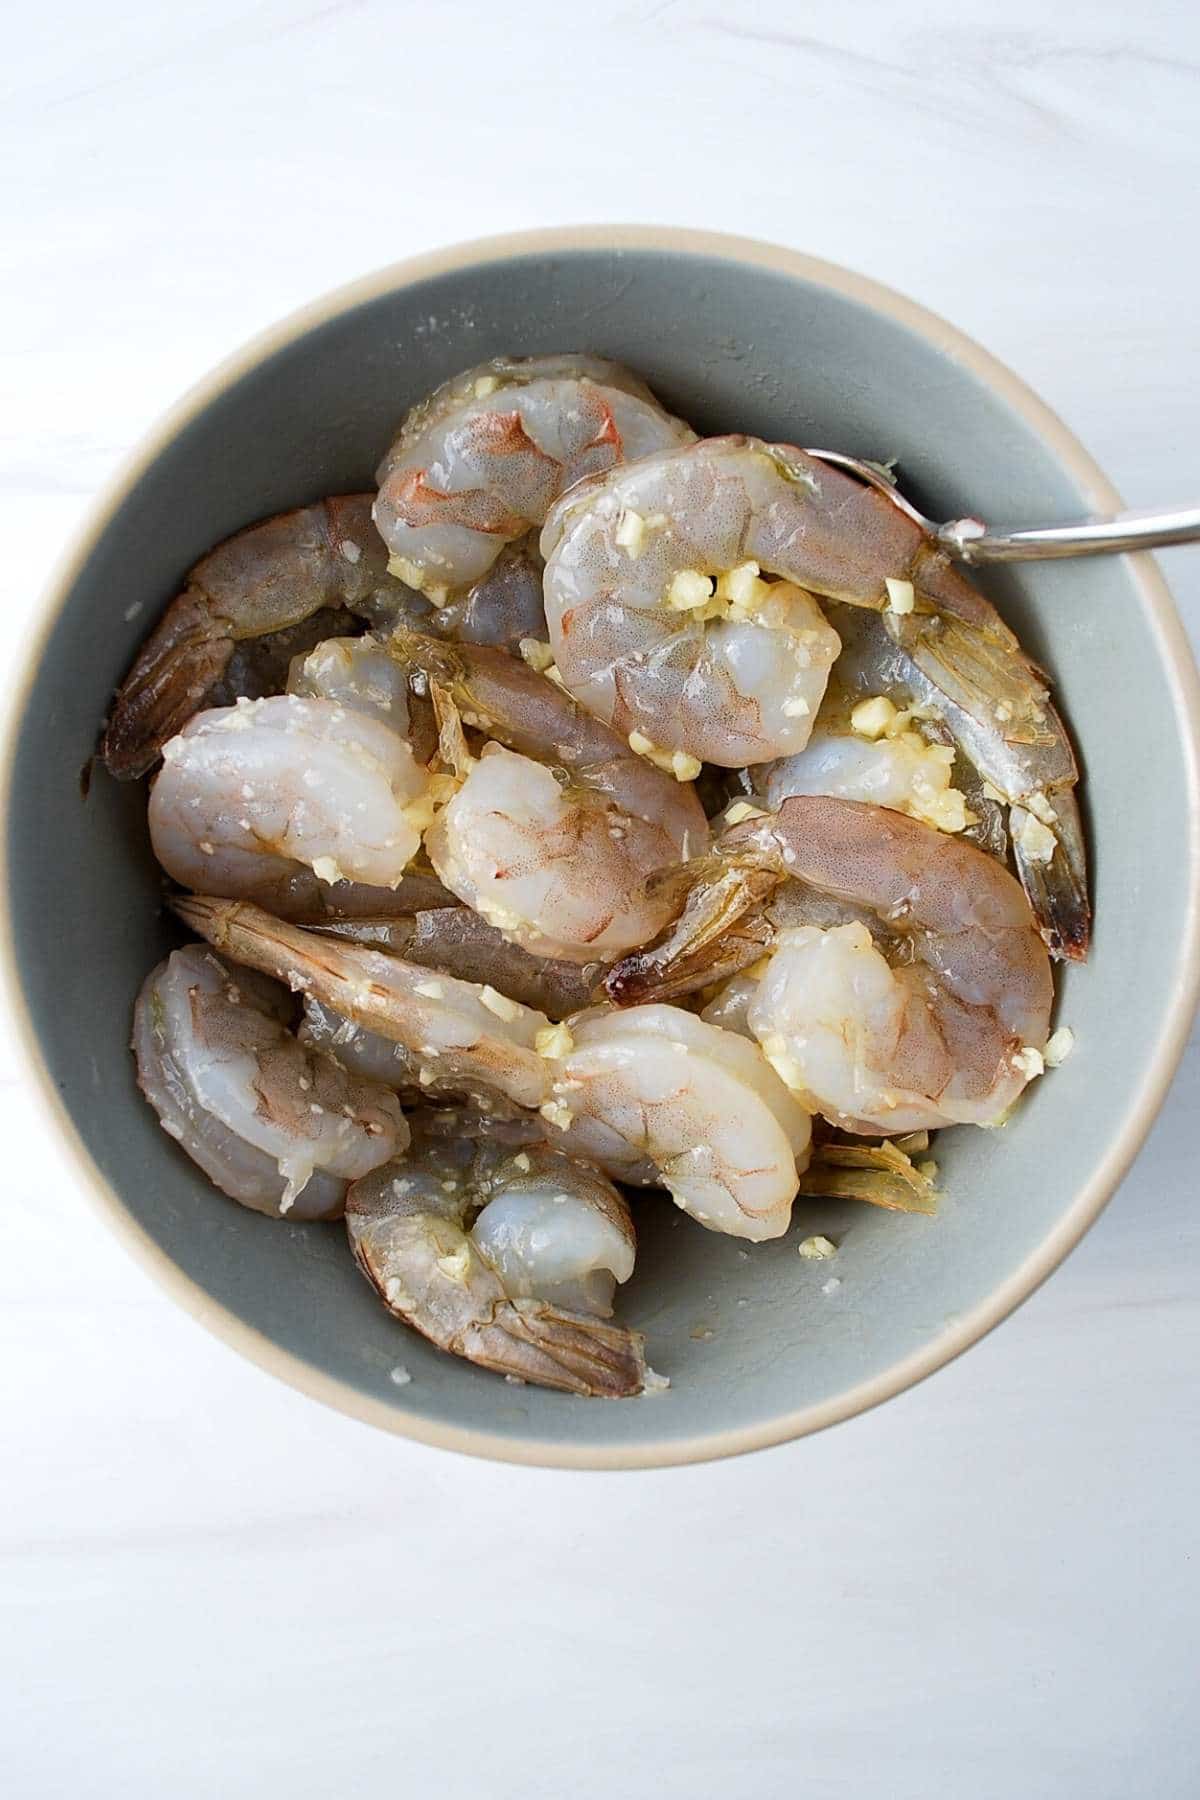 raw prawns/shrimp marinating in a garlic olive oil marinade